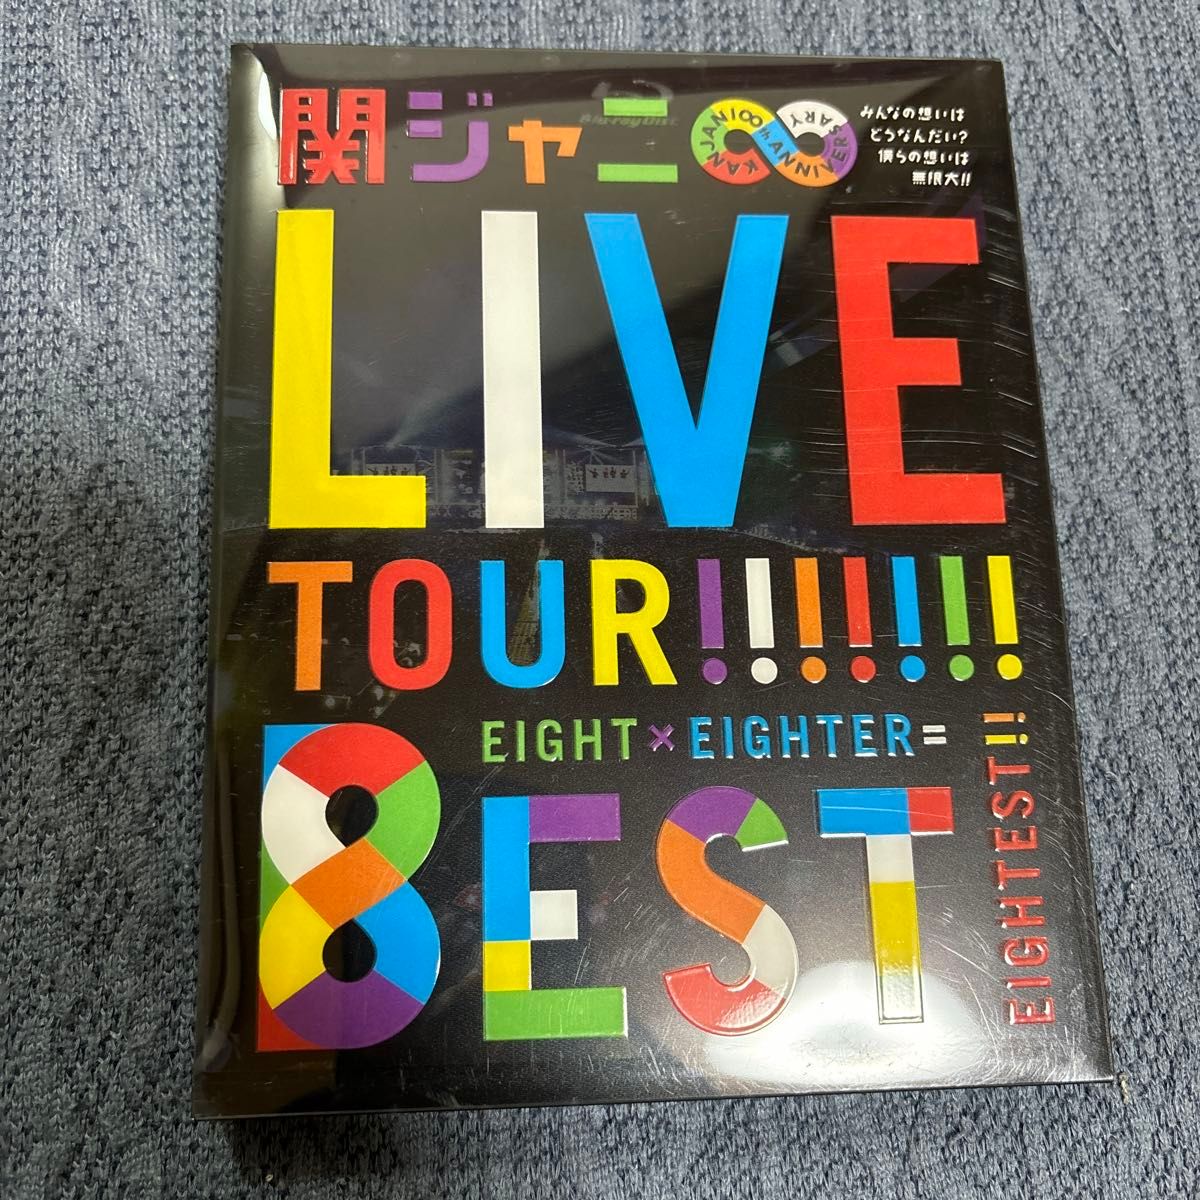 KANJANI∞LIVE TOUR!! 8EST? みんなの想いはどうなんだい? 僕らの想いは無限大!!? (Blu-ray盤)